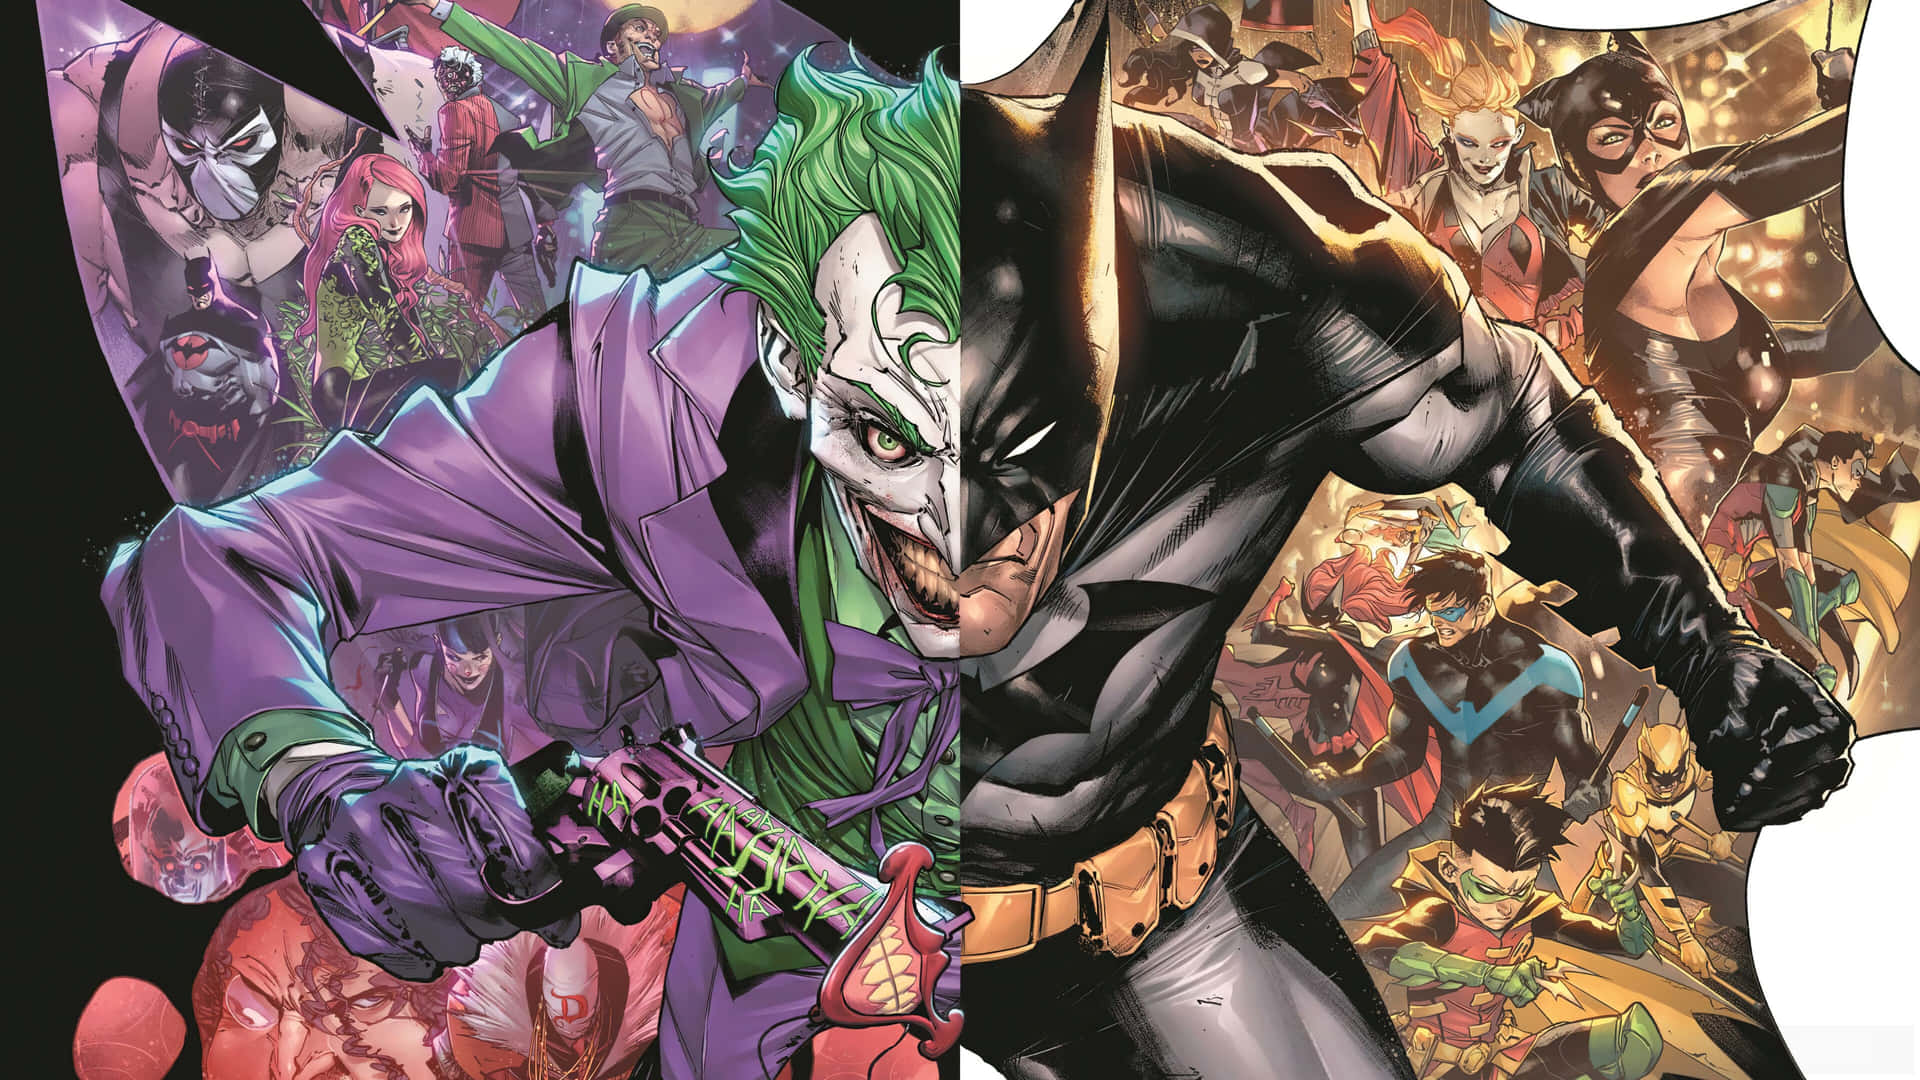 Cool Joker Cover With Batman Wallpaper